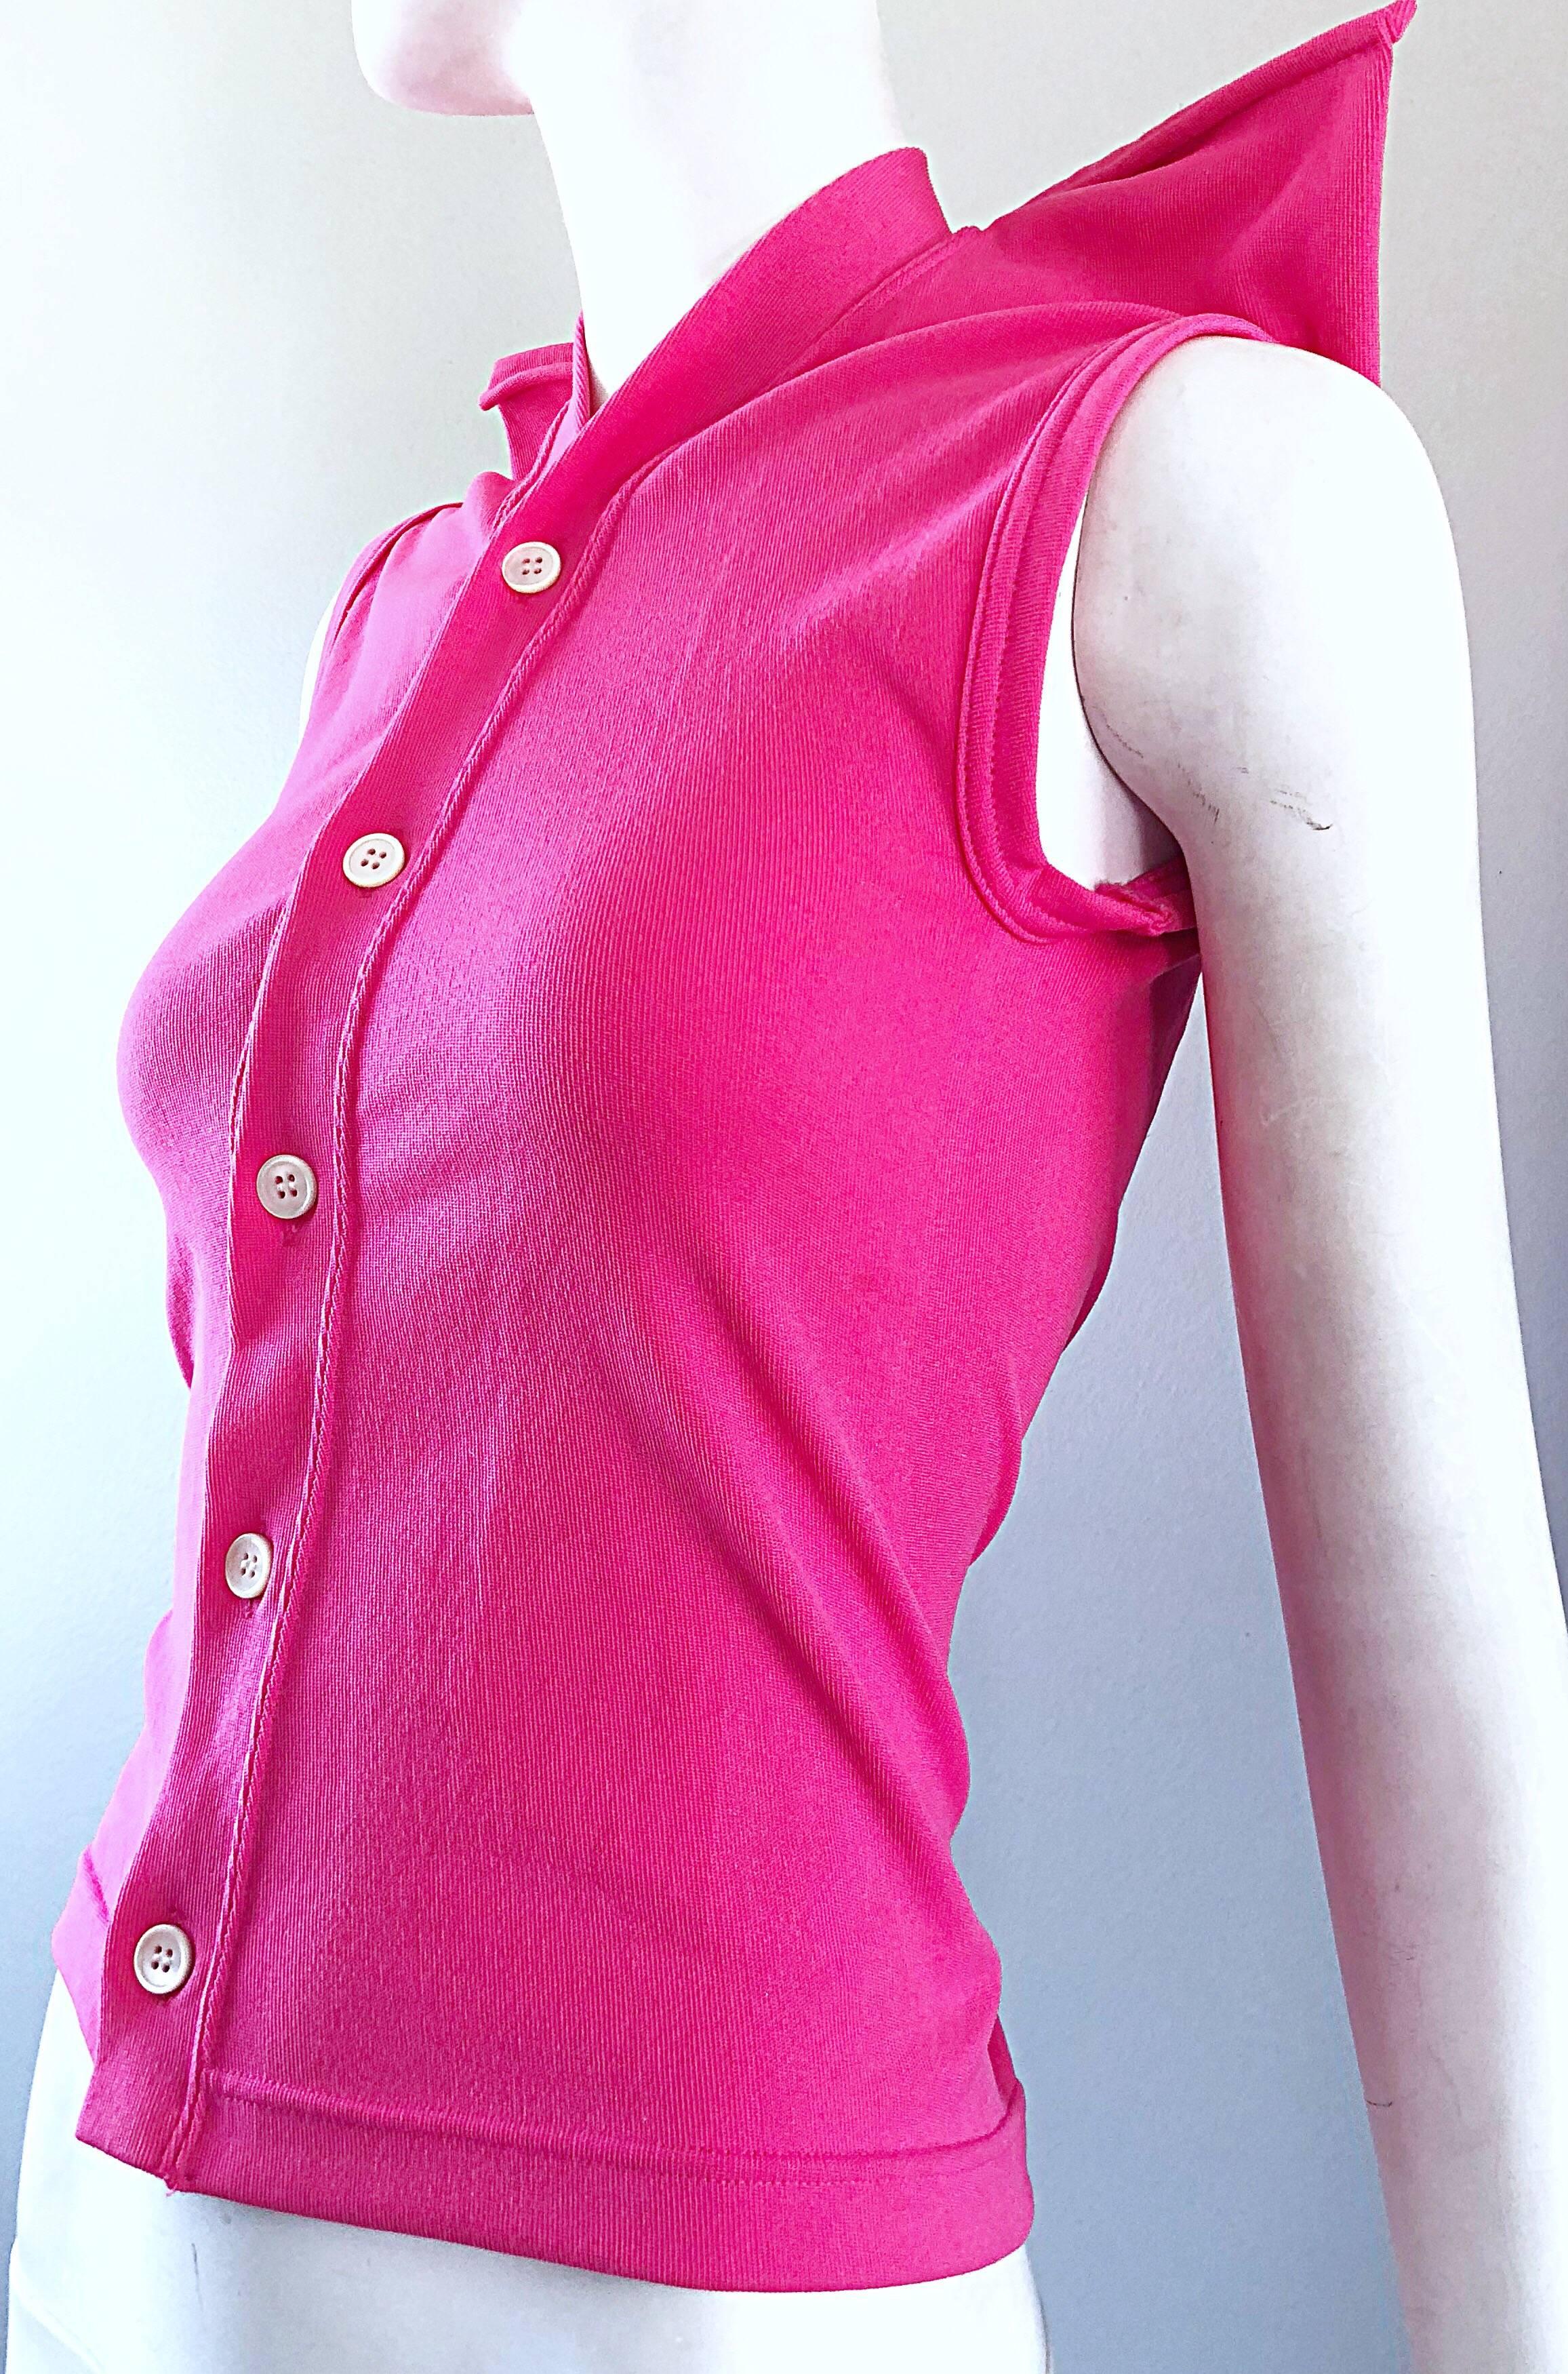 Rare Vintage Comme des Garcons 1990s Hot Pink Avant Garde Futuristic Top Blouse  For Sale 3